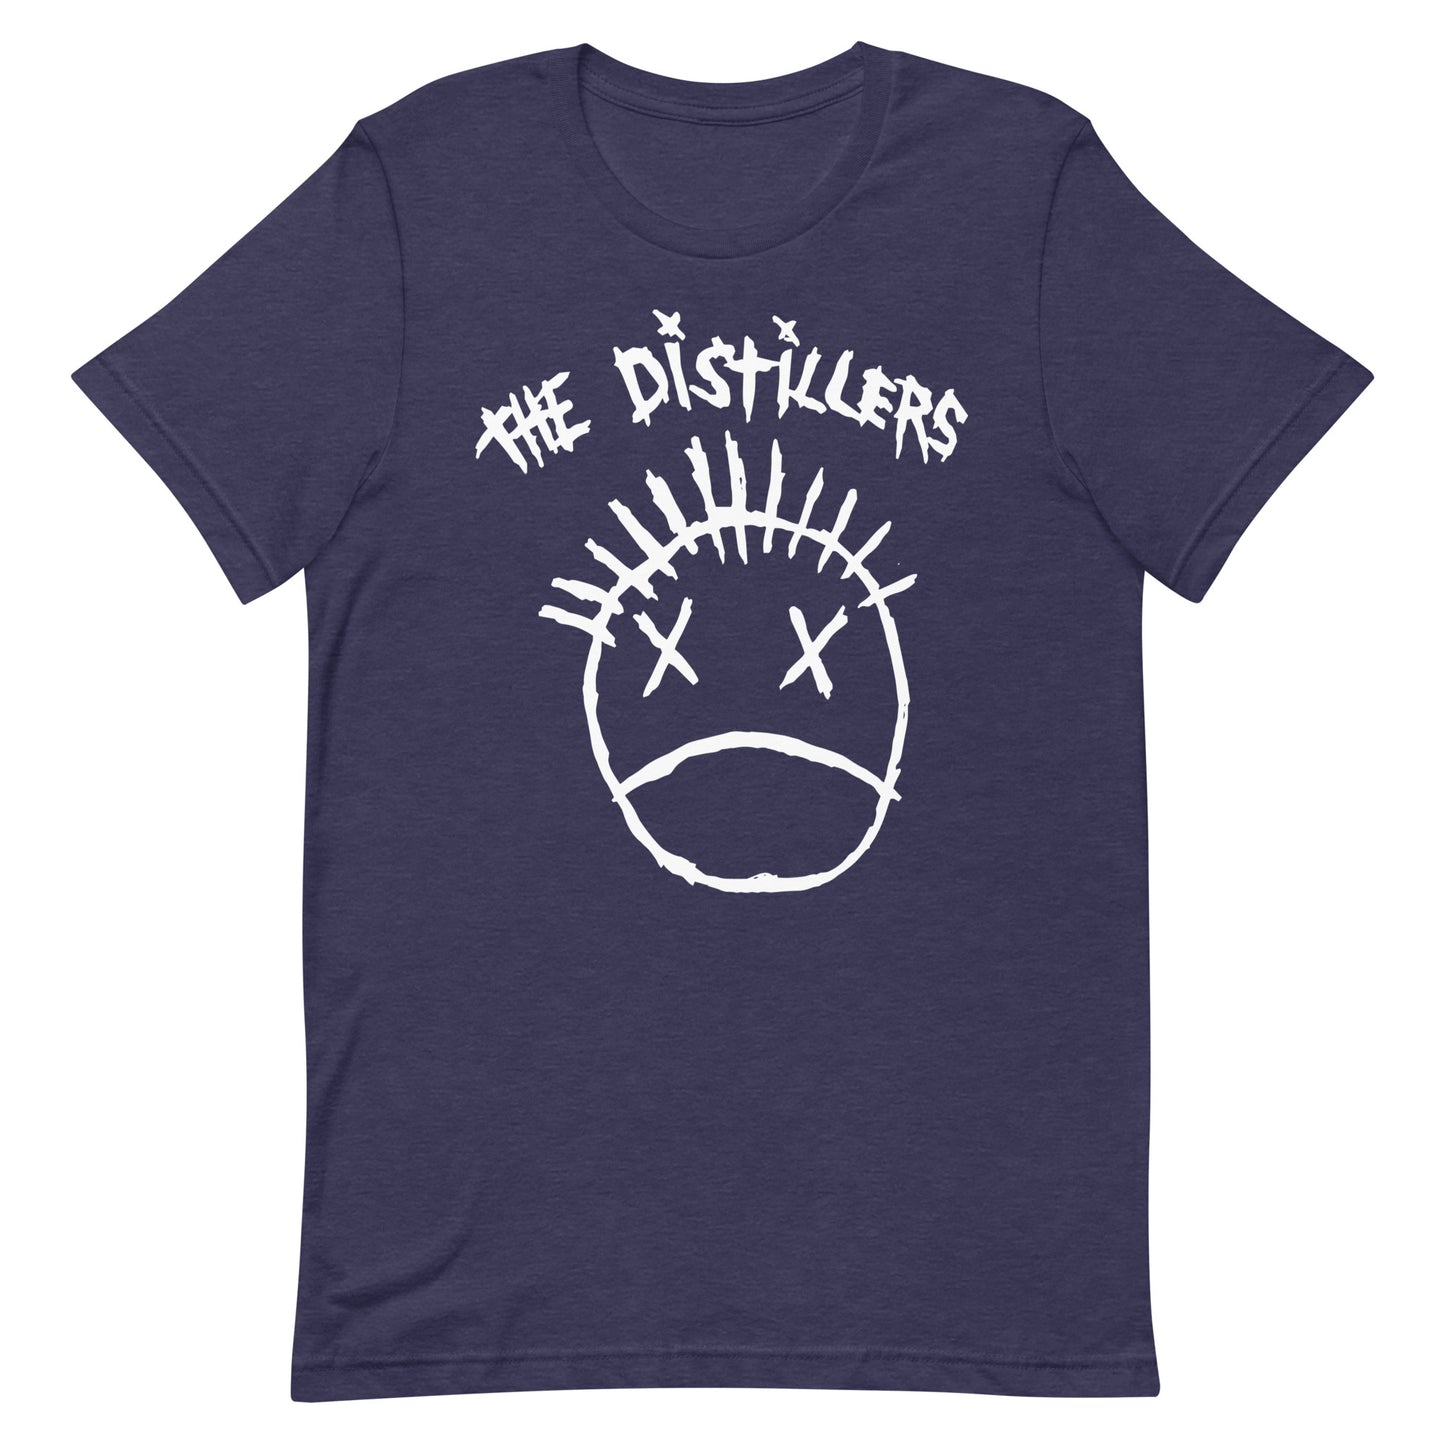 Distillers T-Shirt